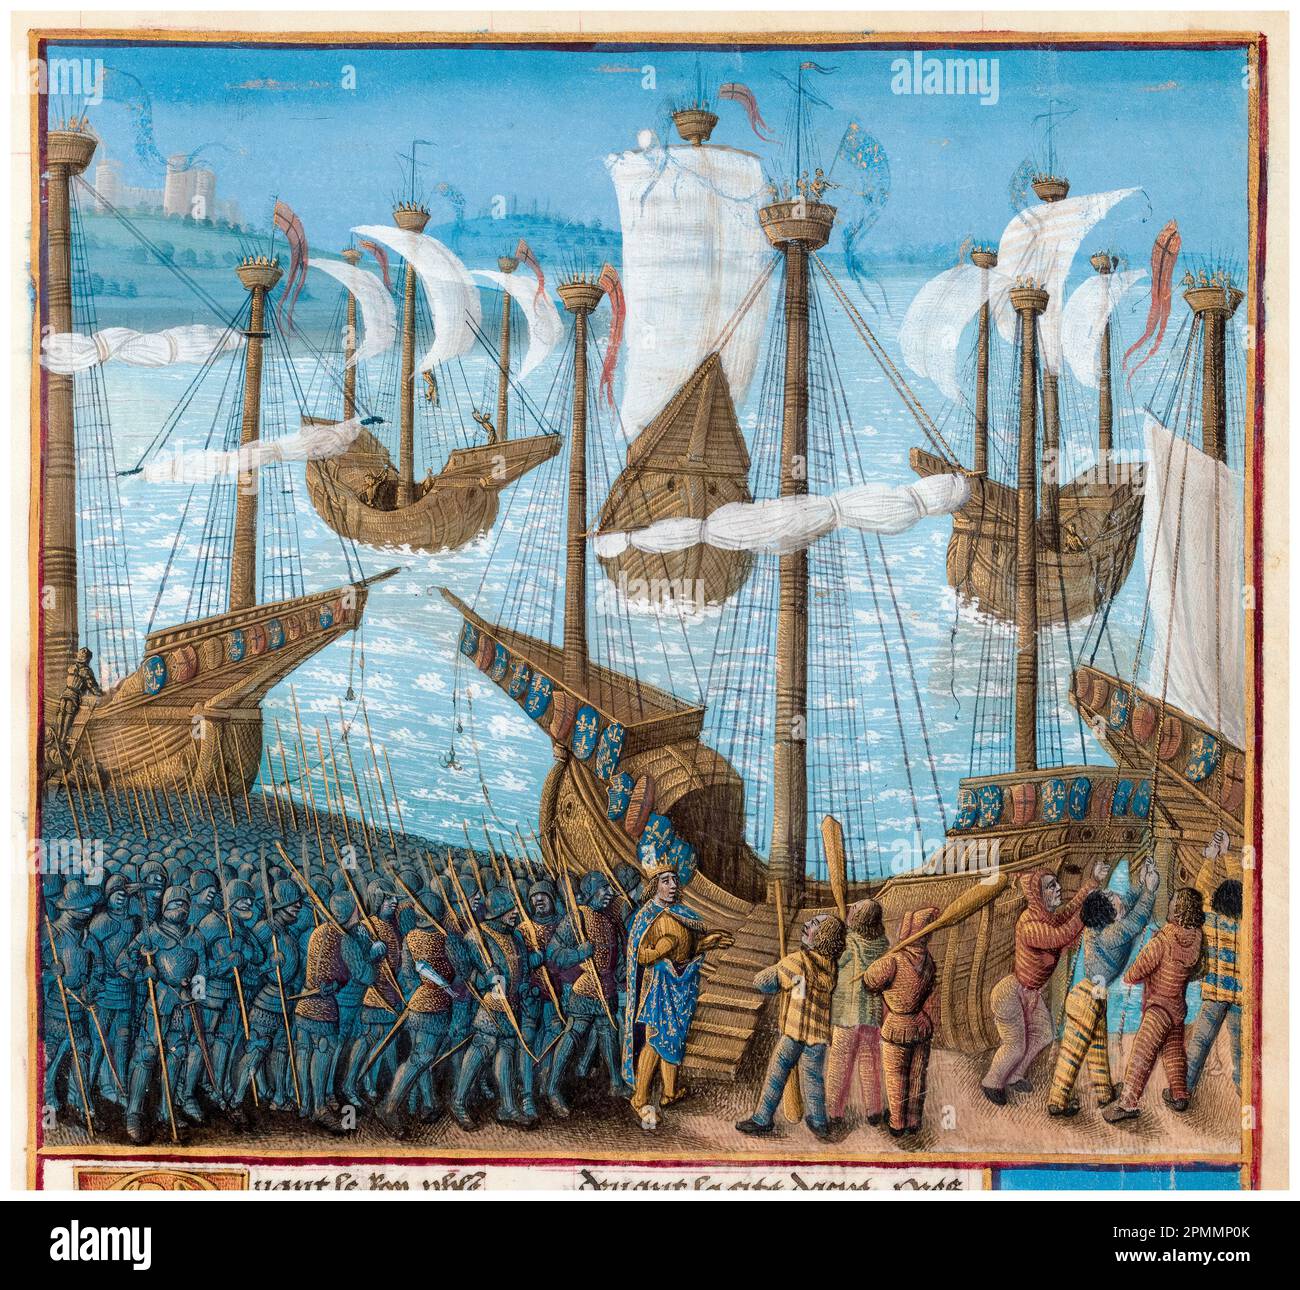 Croisades: Roi Philippe II de France (1165-1223), avec son armée, départ pour la troisième croisade, peinture manuscrite illuminée de Jean Colombe, vers 1474 Banque D'Images